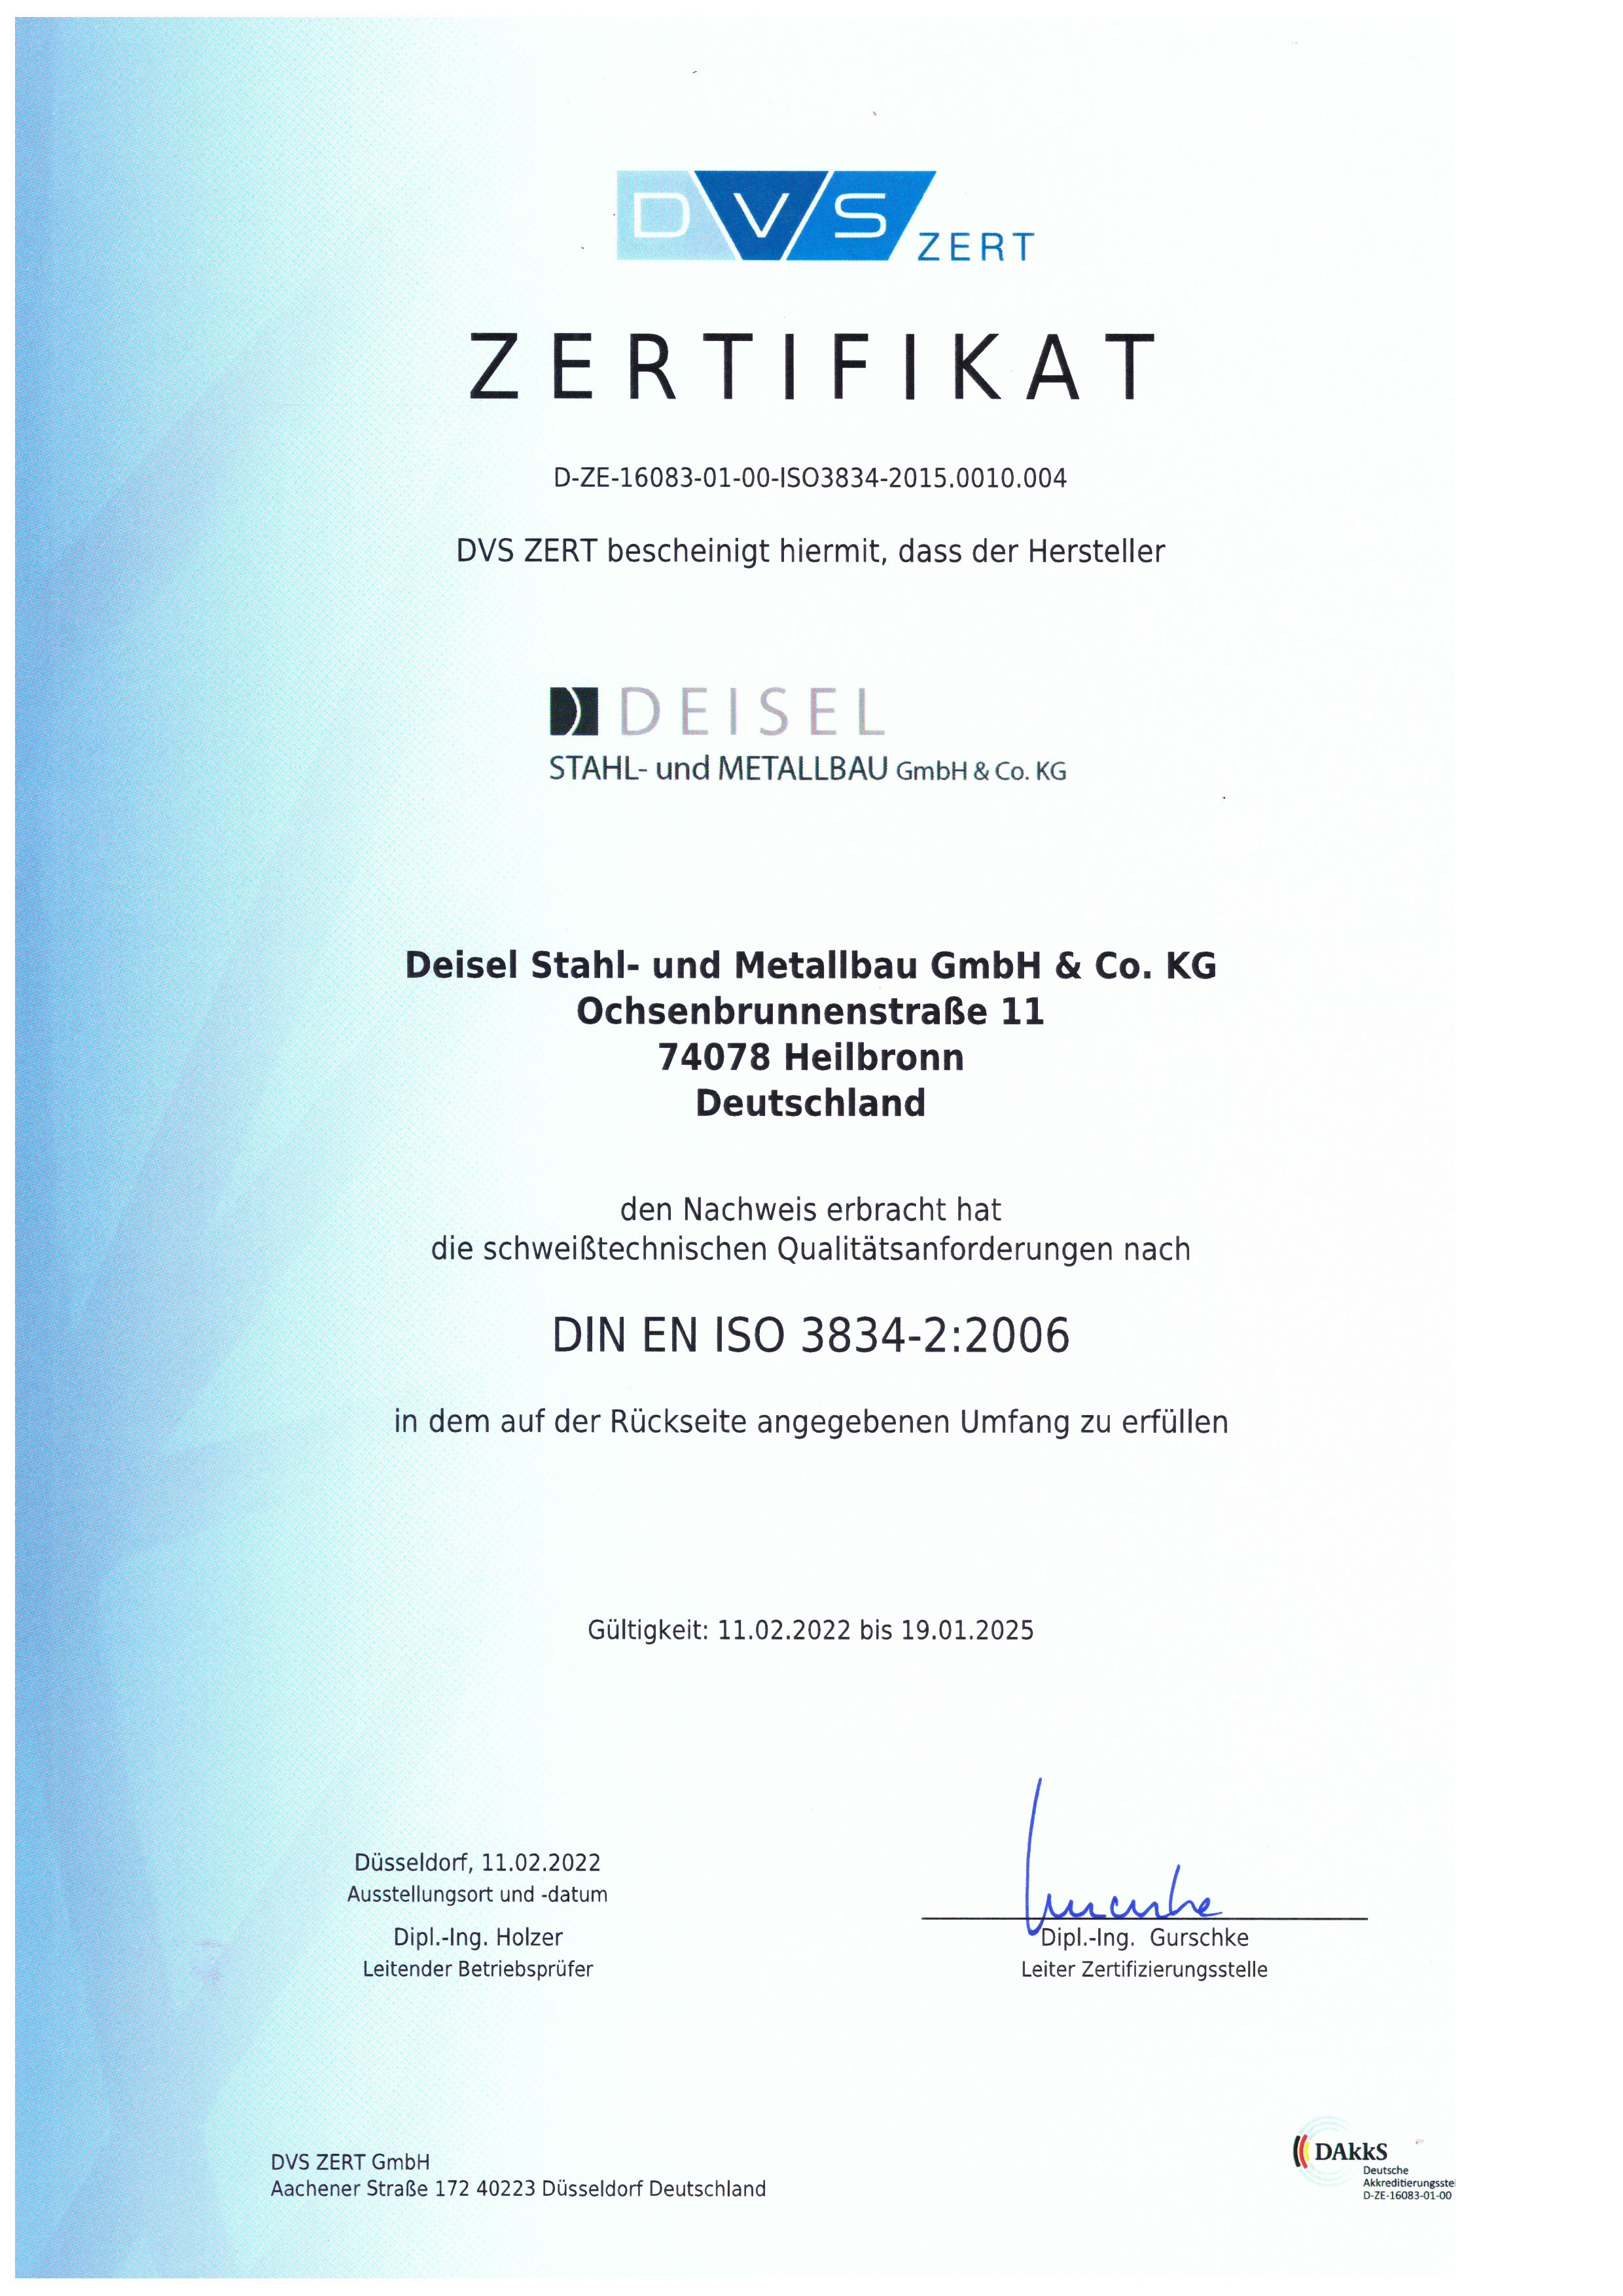 Zertifikat-DIN-EN-IS-3834-2.2006_2022-2025.jpg